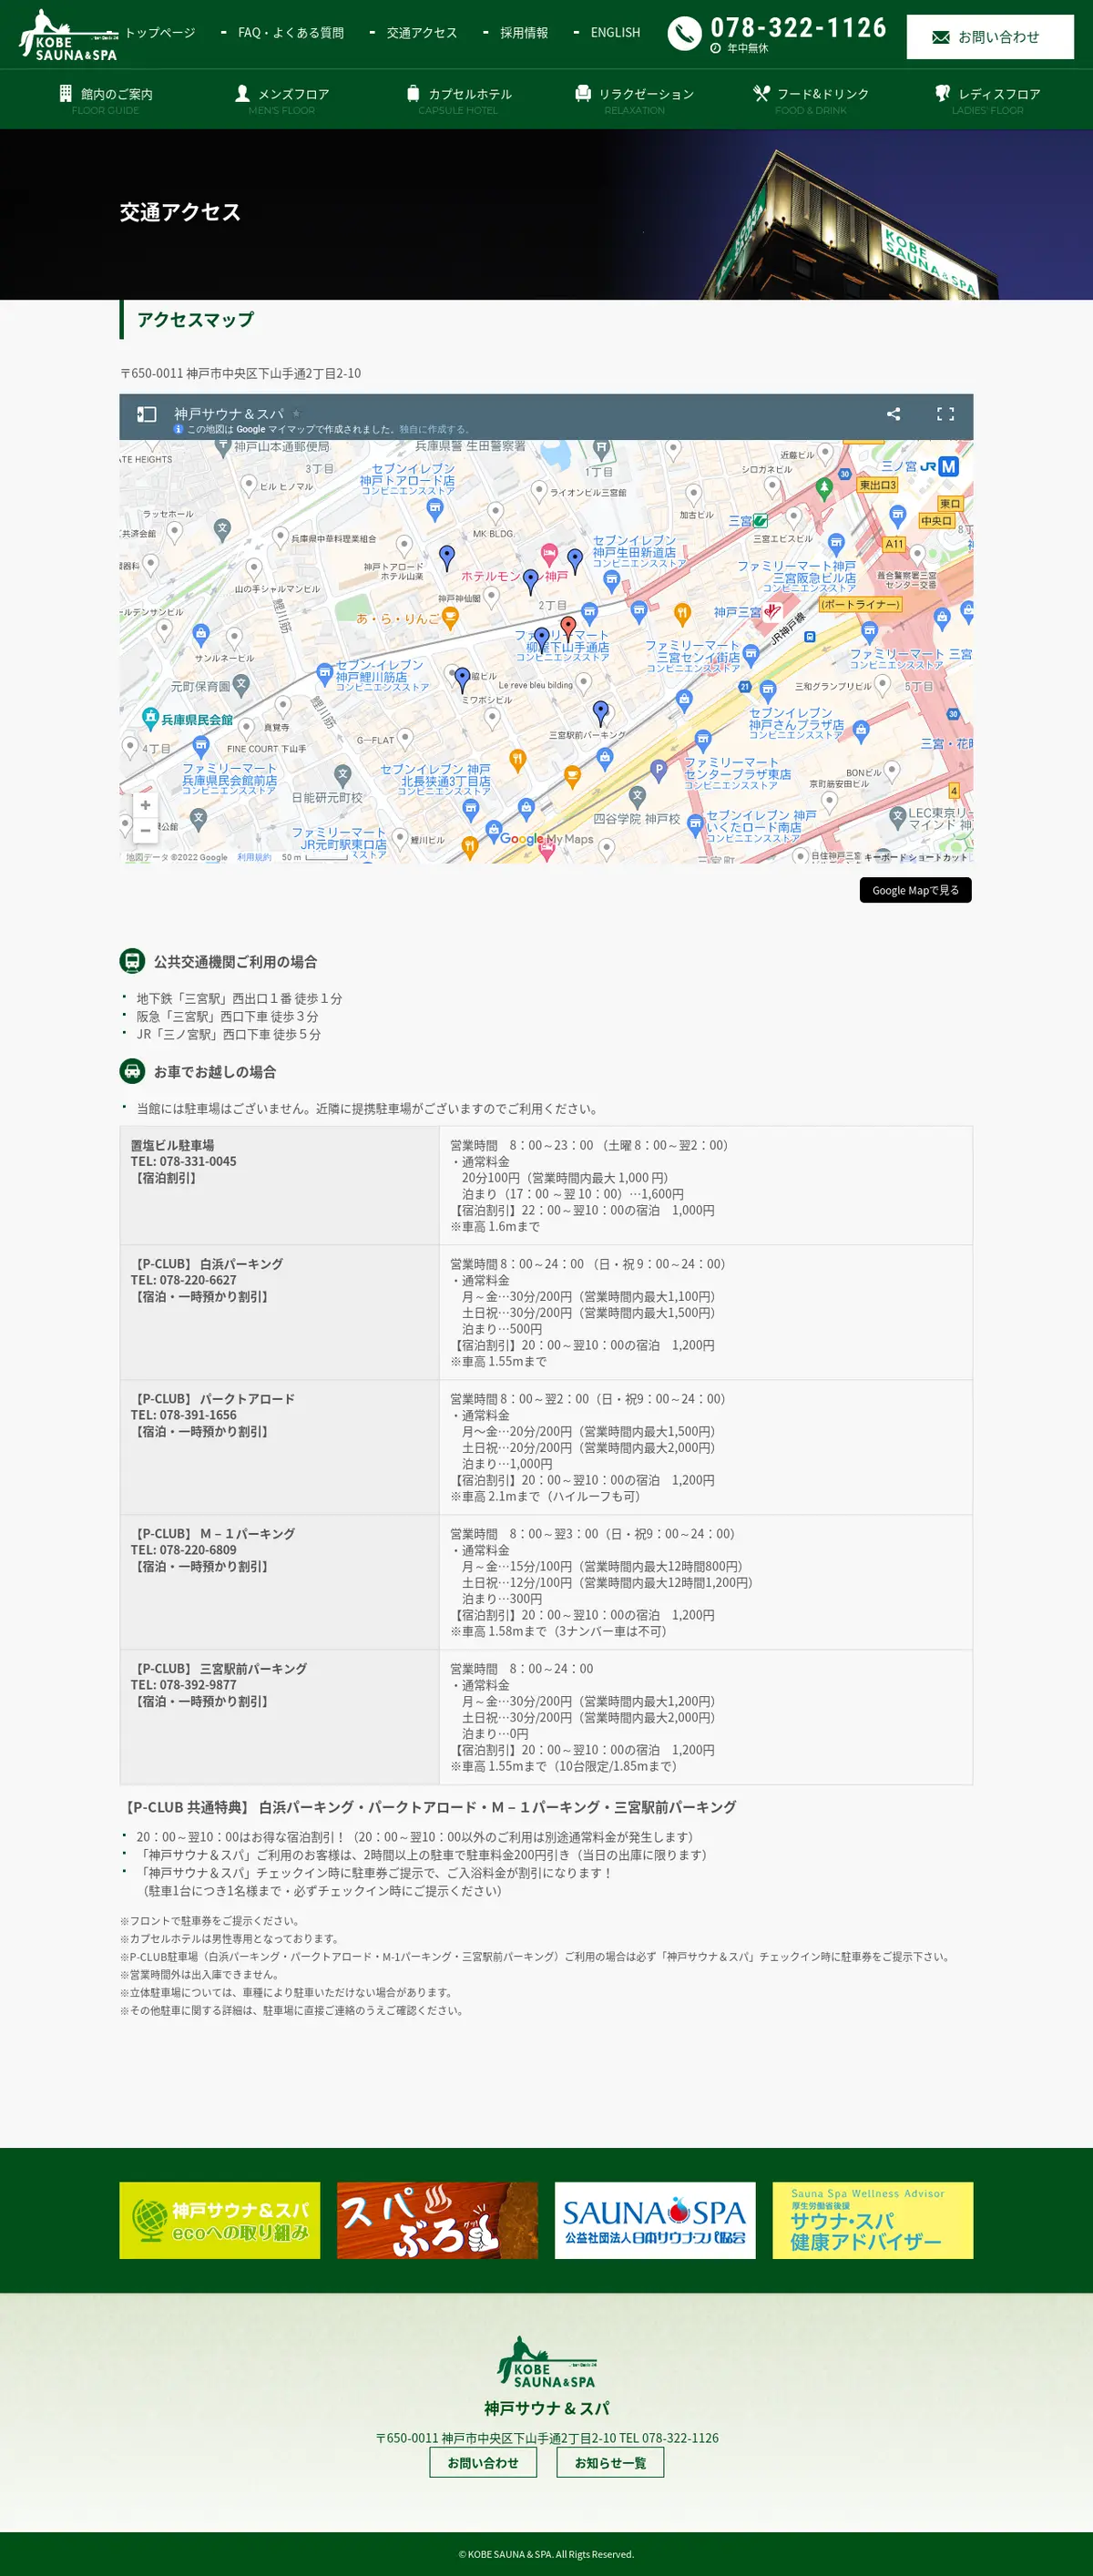 キャプチャ画面 会社名:神戸サウナ & スパプロジェクト名:KOBESAUNA＆SPA 画面名:アクセス・地図・マップ詳細 デバイス名:PCカテゴリ:旅行・ホテル・旅館タグ:アクセス・地図・マップ詳細